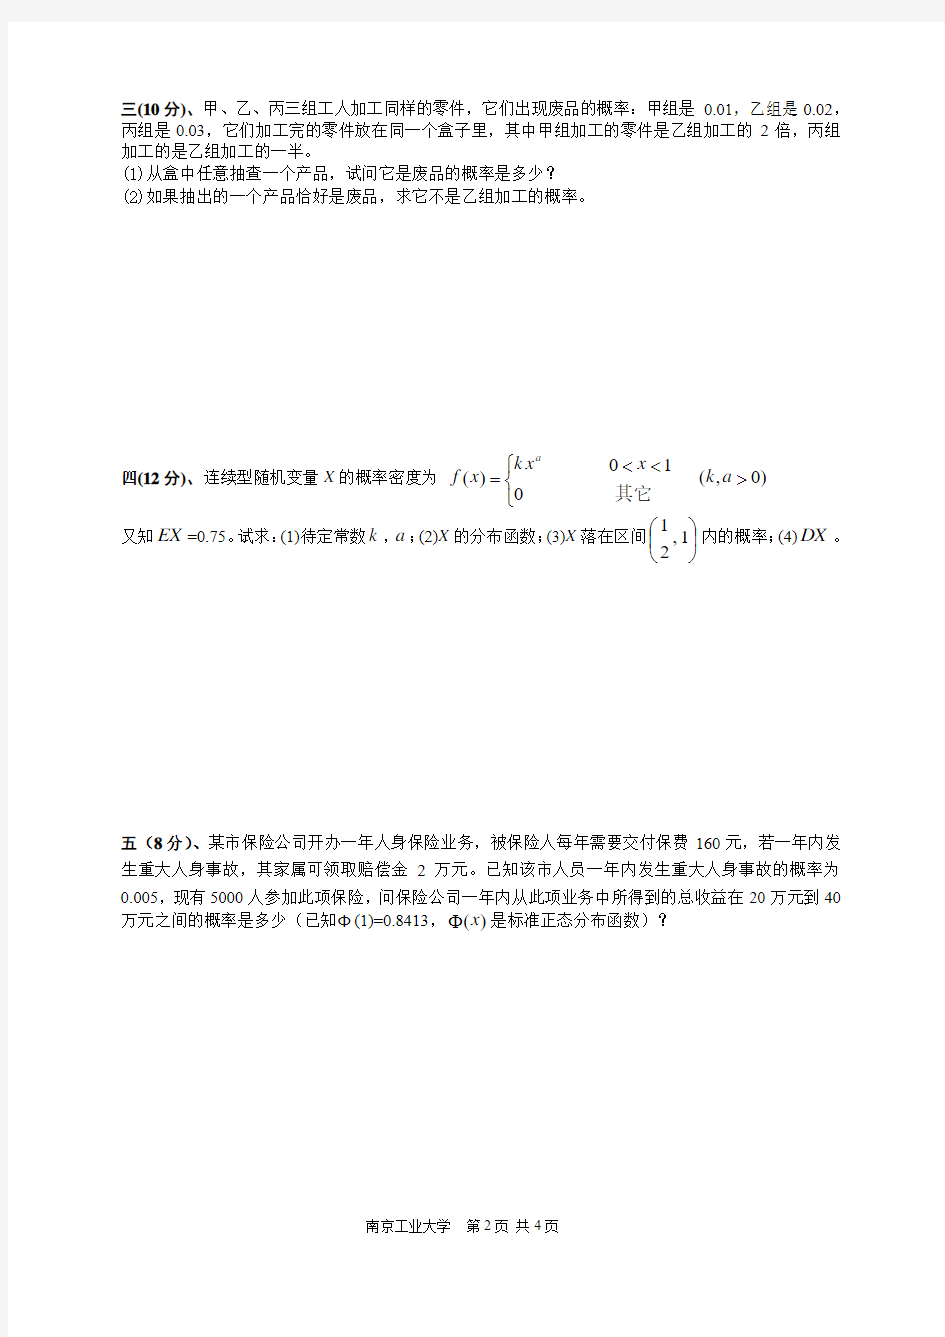 南京工业大学概率统计(09~10(2)A江浦)课程考试试题